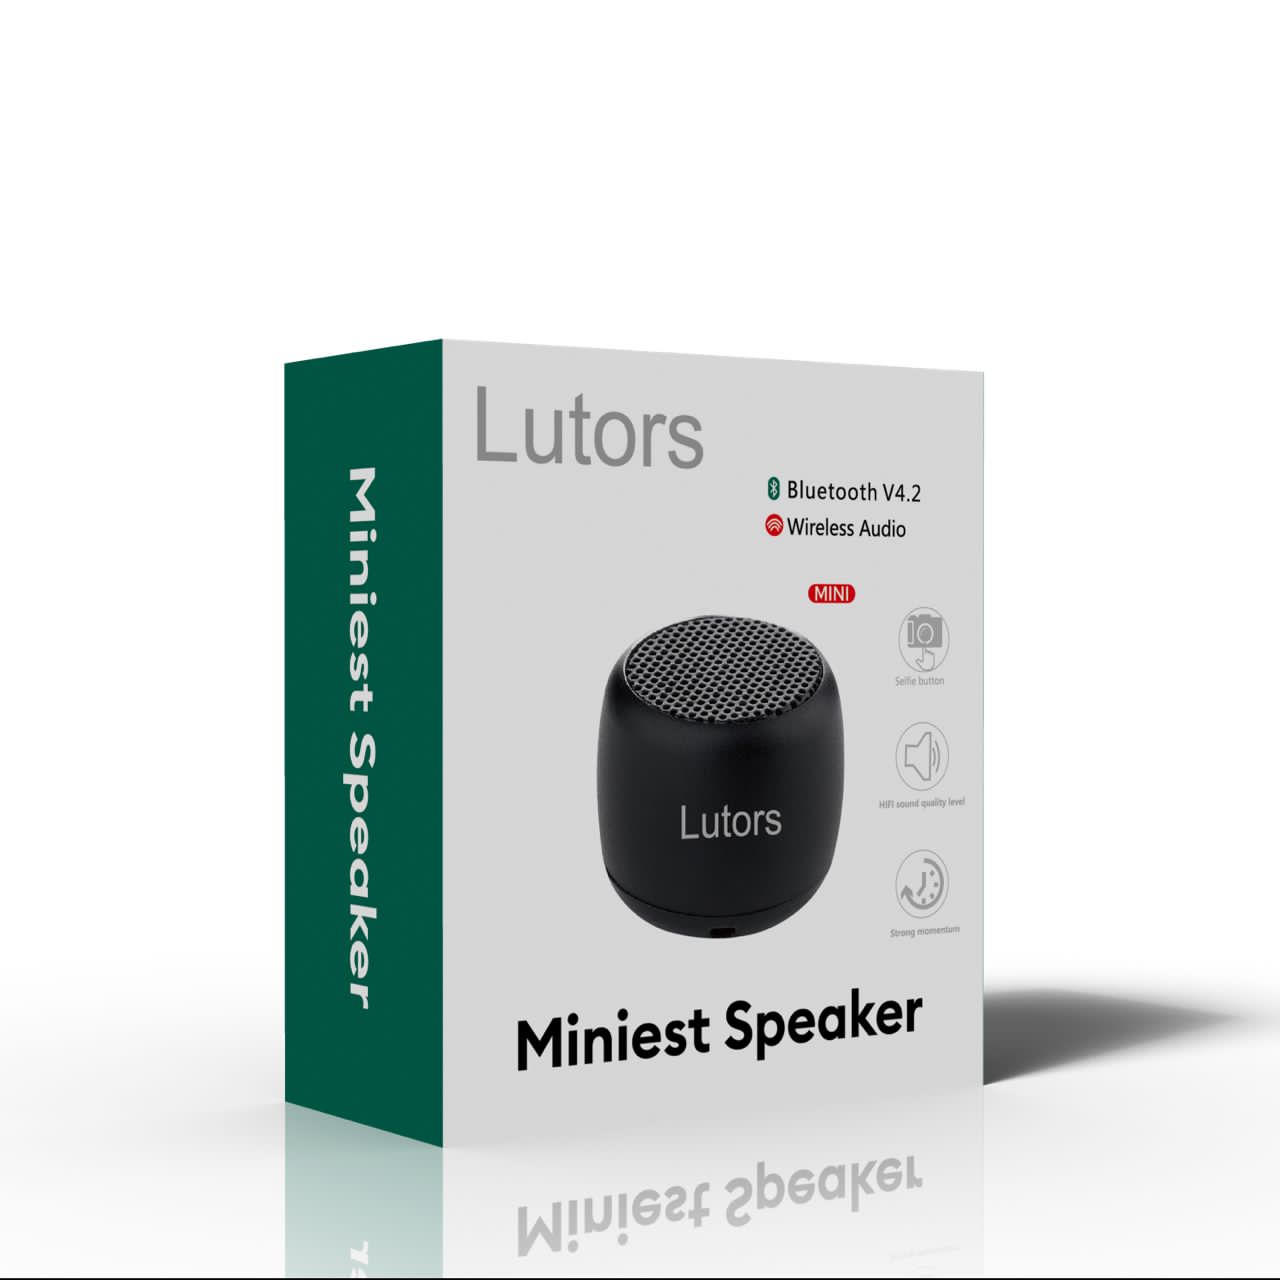 Miniset speaker